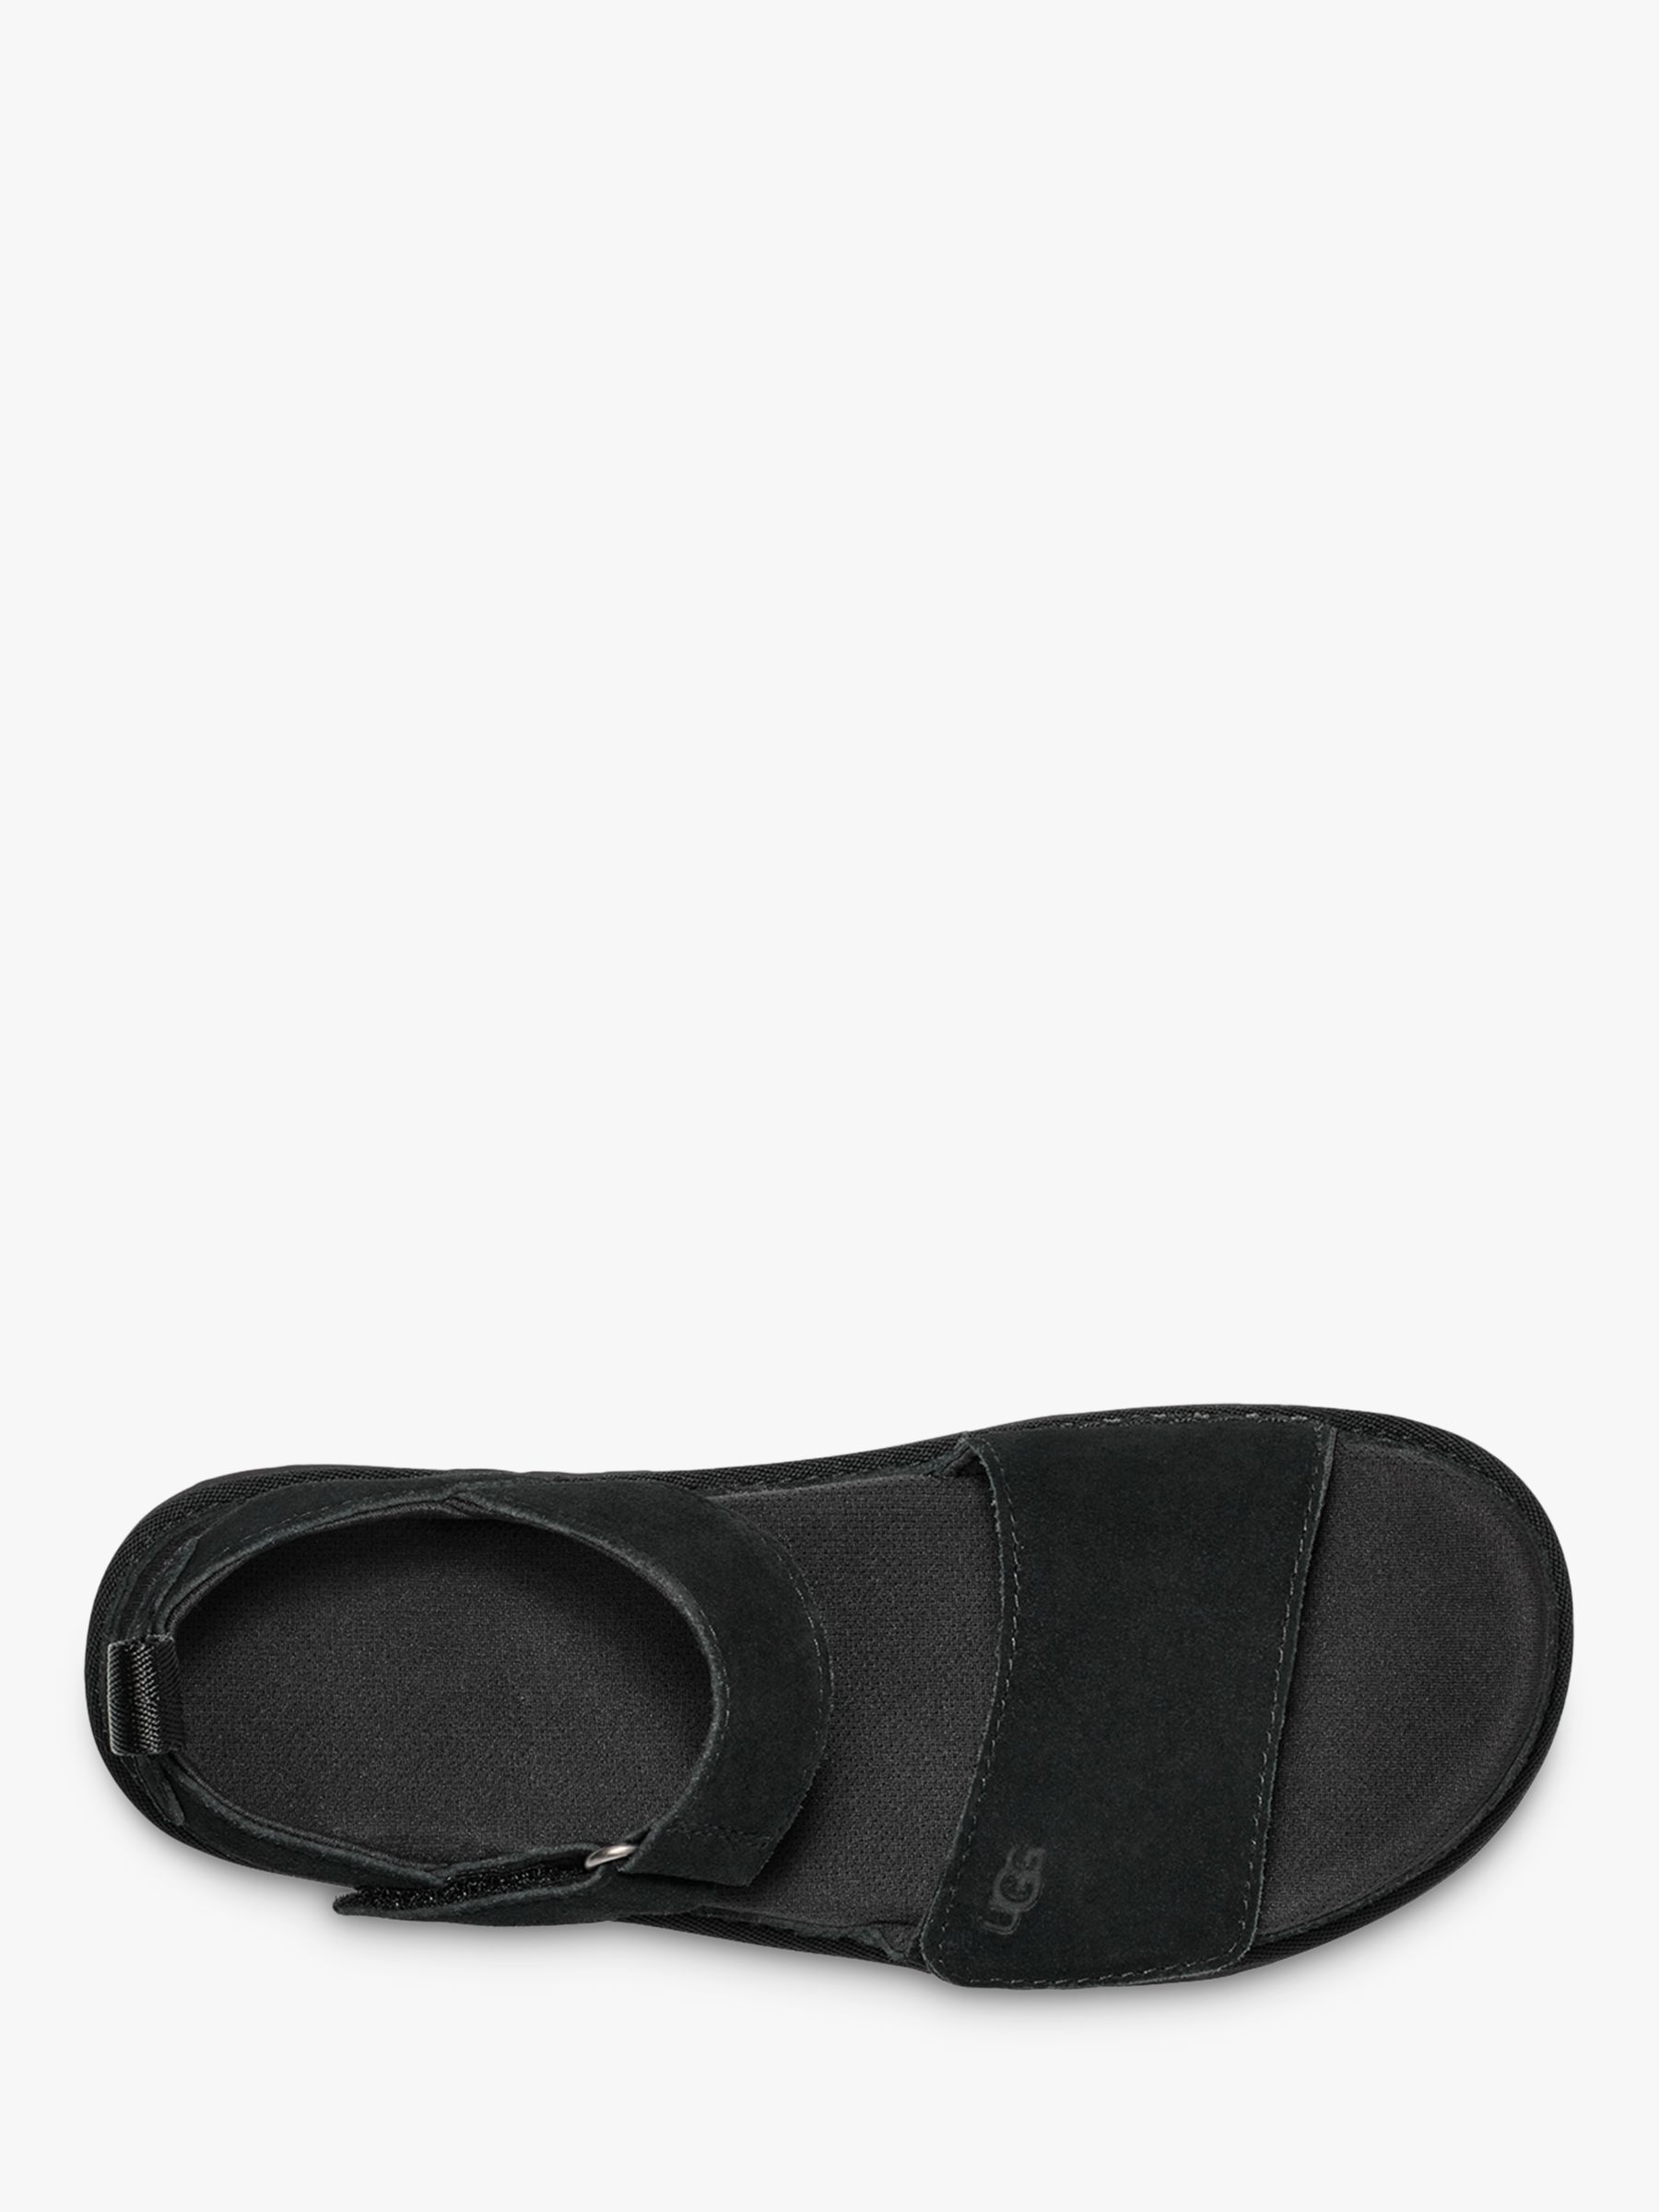 UGG Goldenstar Platform Sandals, Black, 6